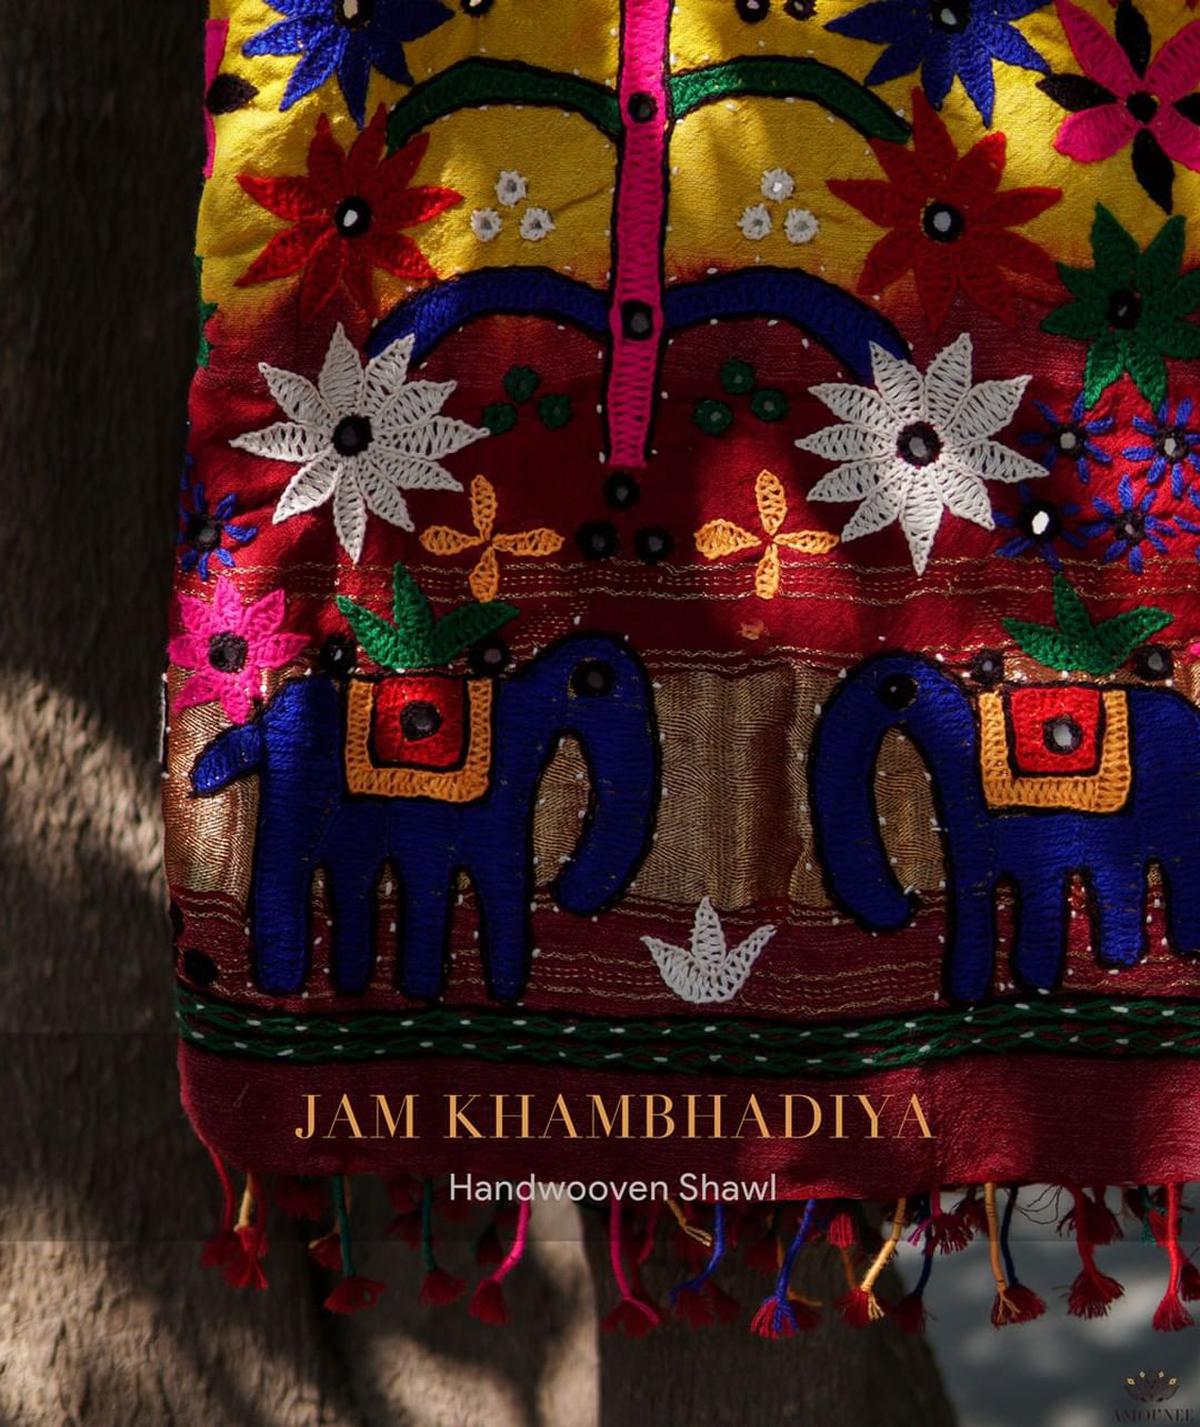 Jam Khambadiya shawl from Amounee